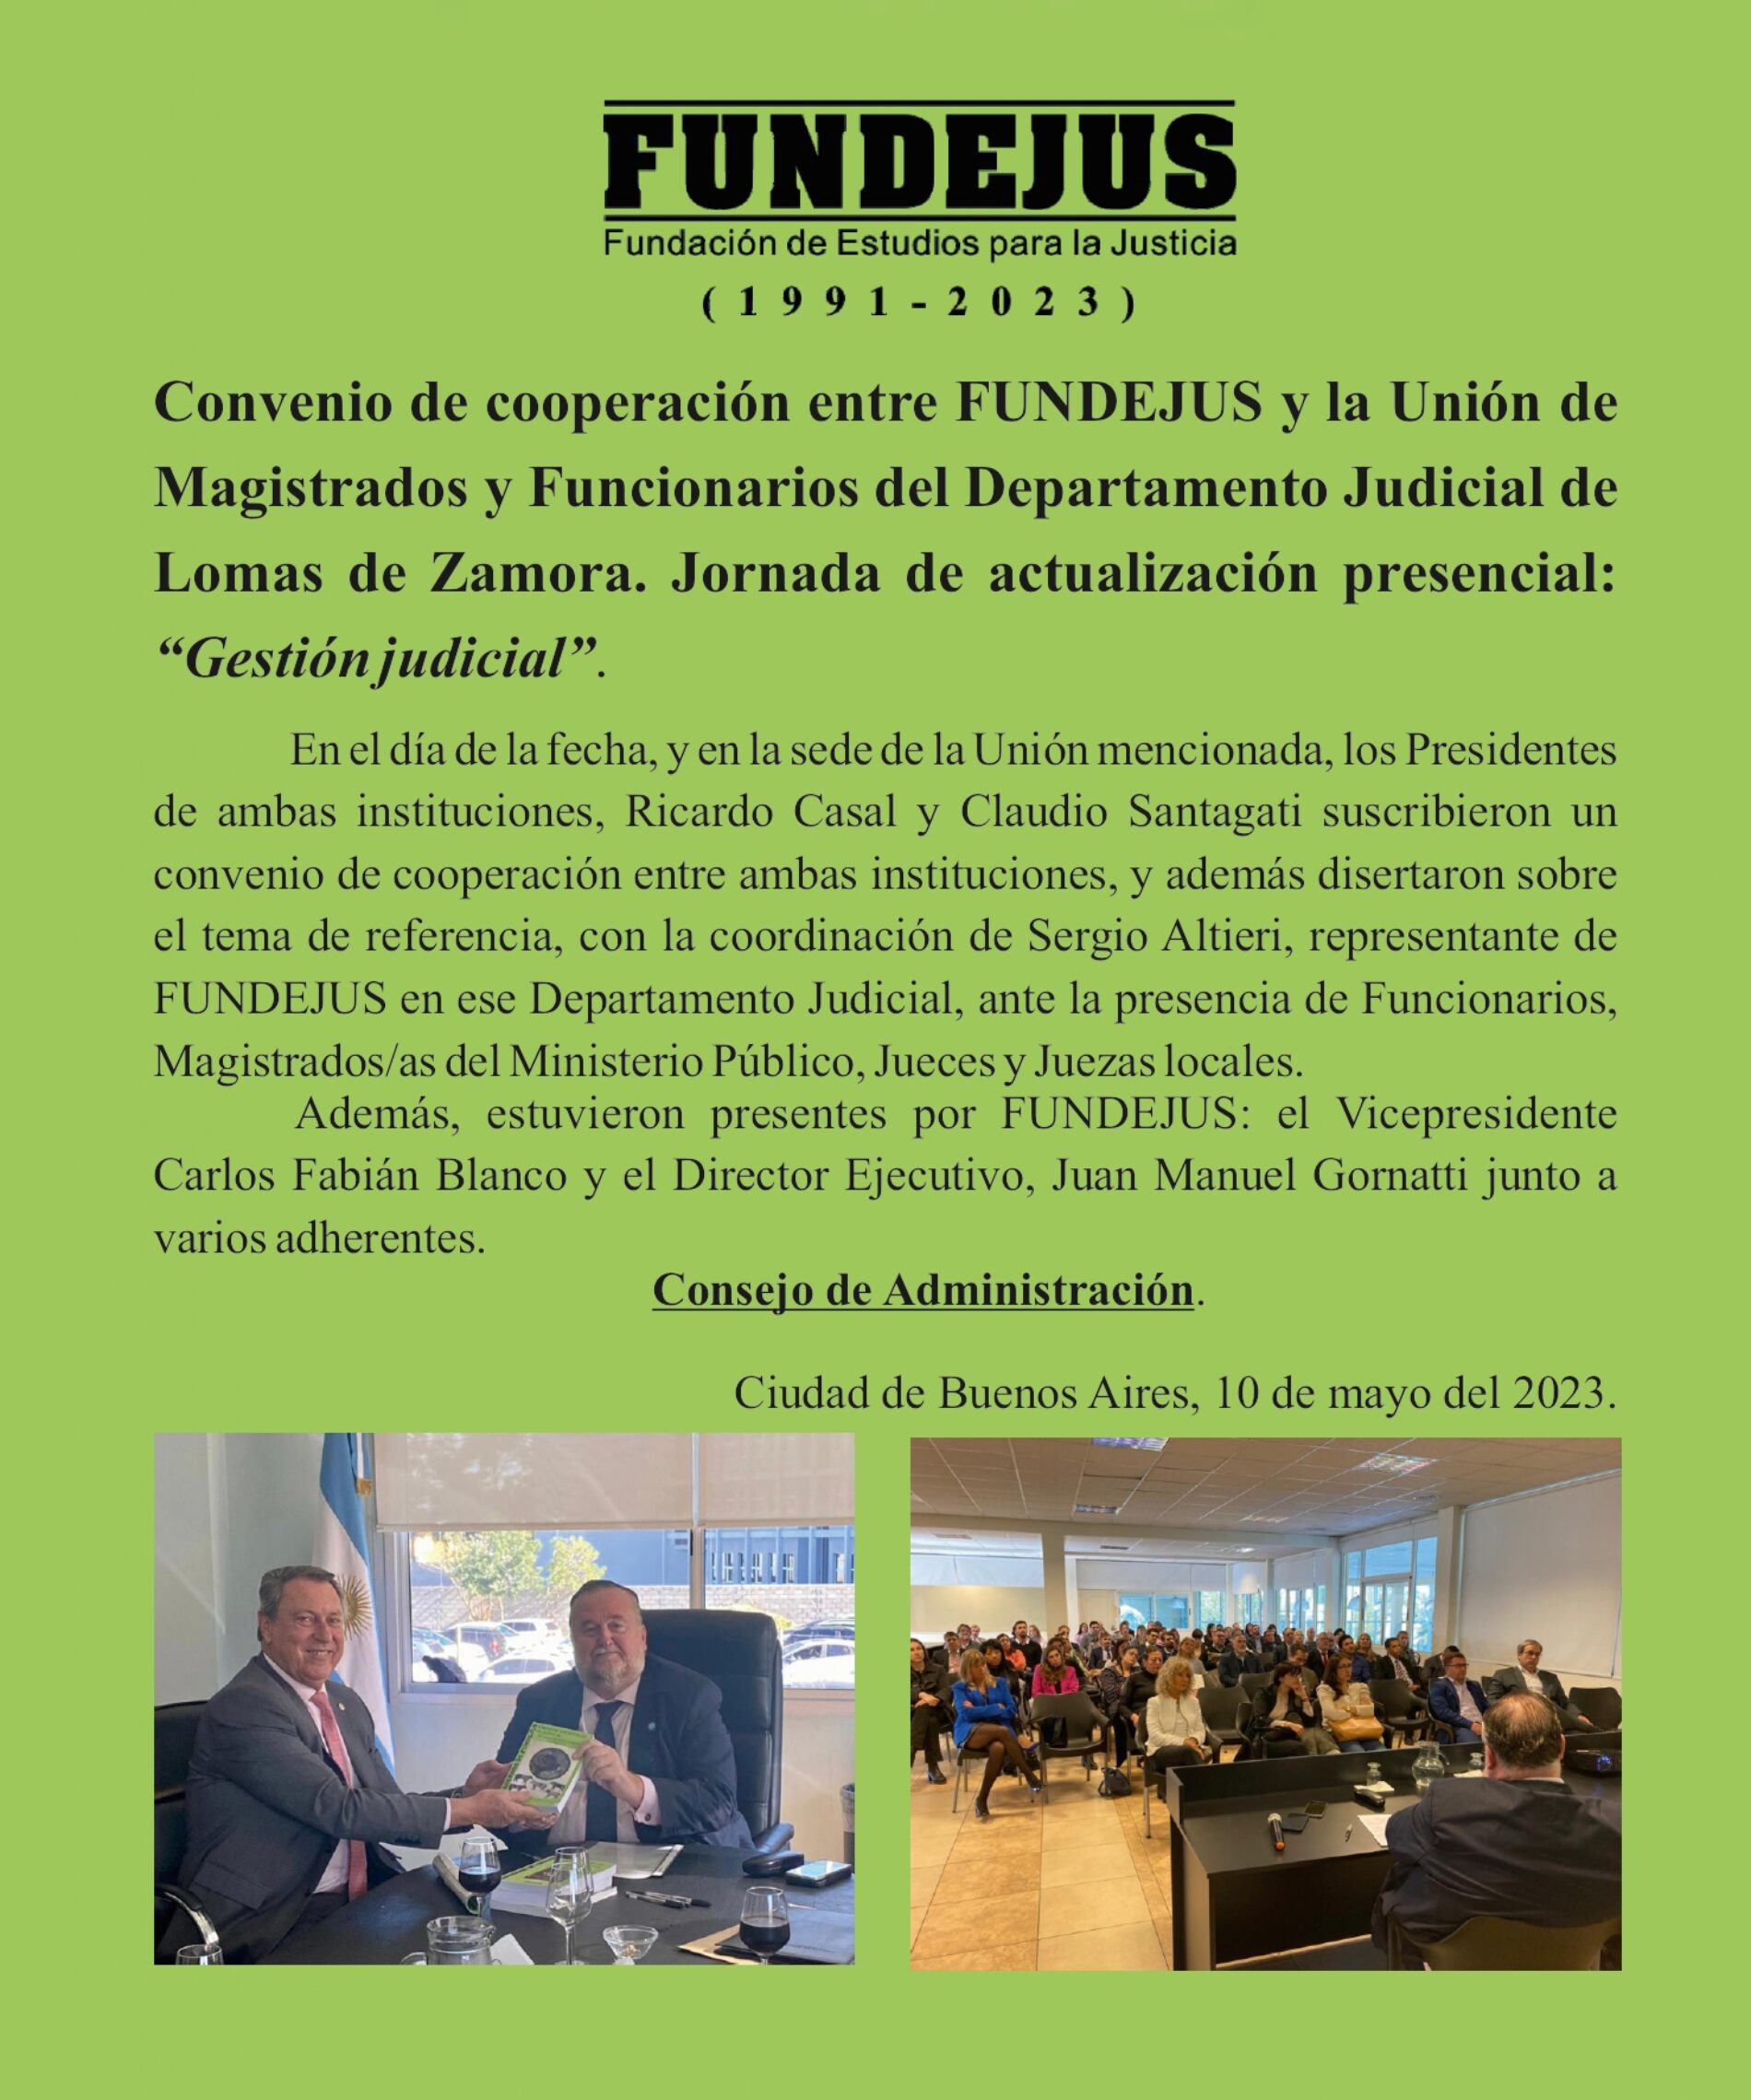 Convenio de cooperación entre FUNDEJUS y la Unión de Magistrados y Funcionarios del Departamento Judicial de Lomas de Zamora.  Jornada de actualización presencial: “Gestión judicial“.